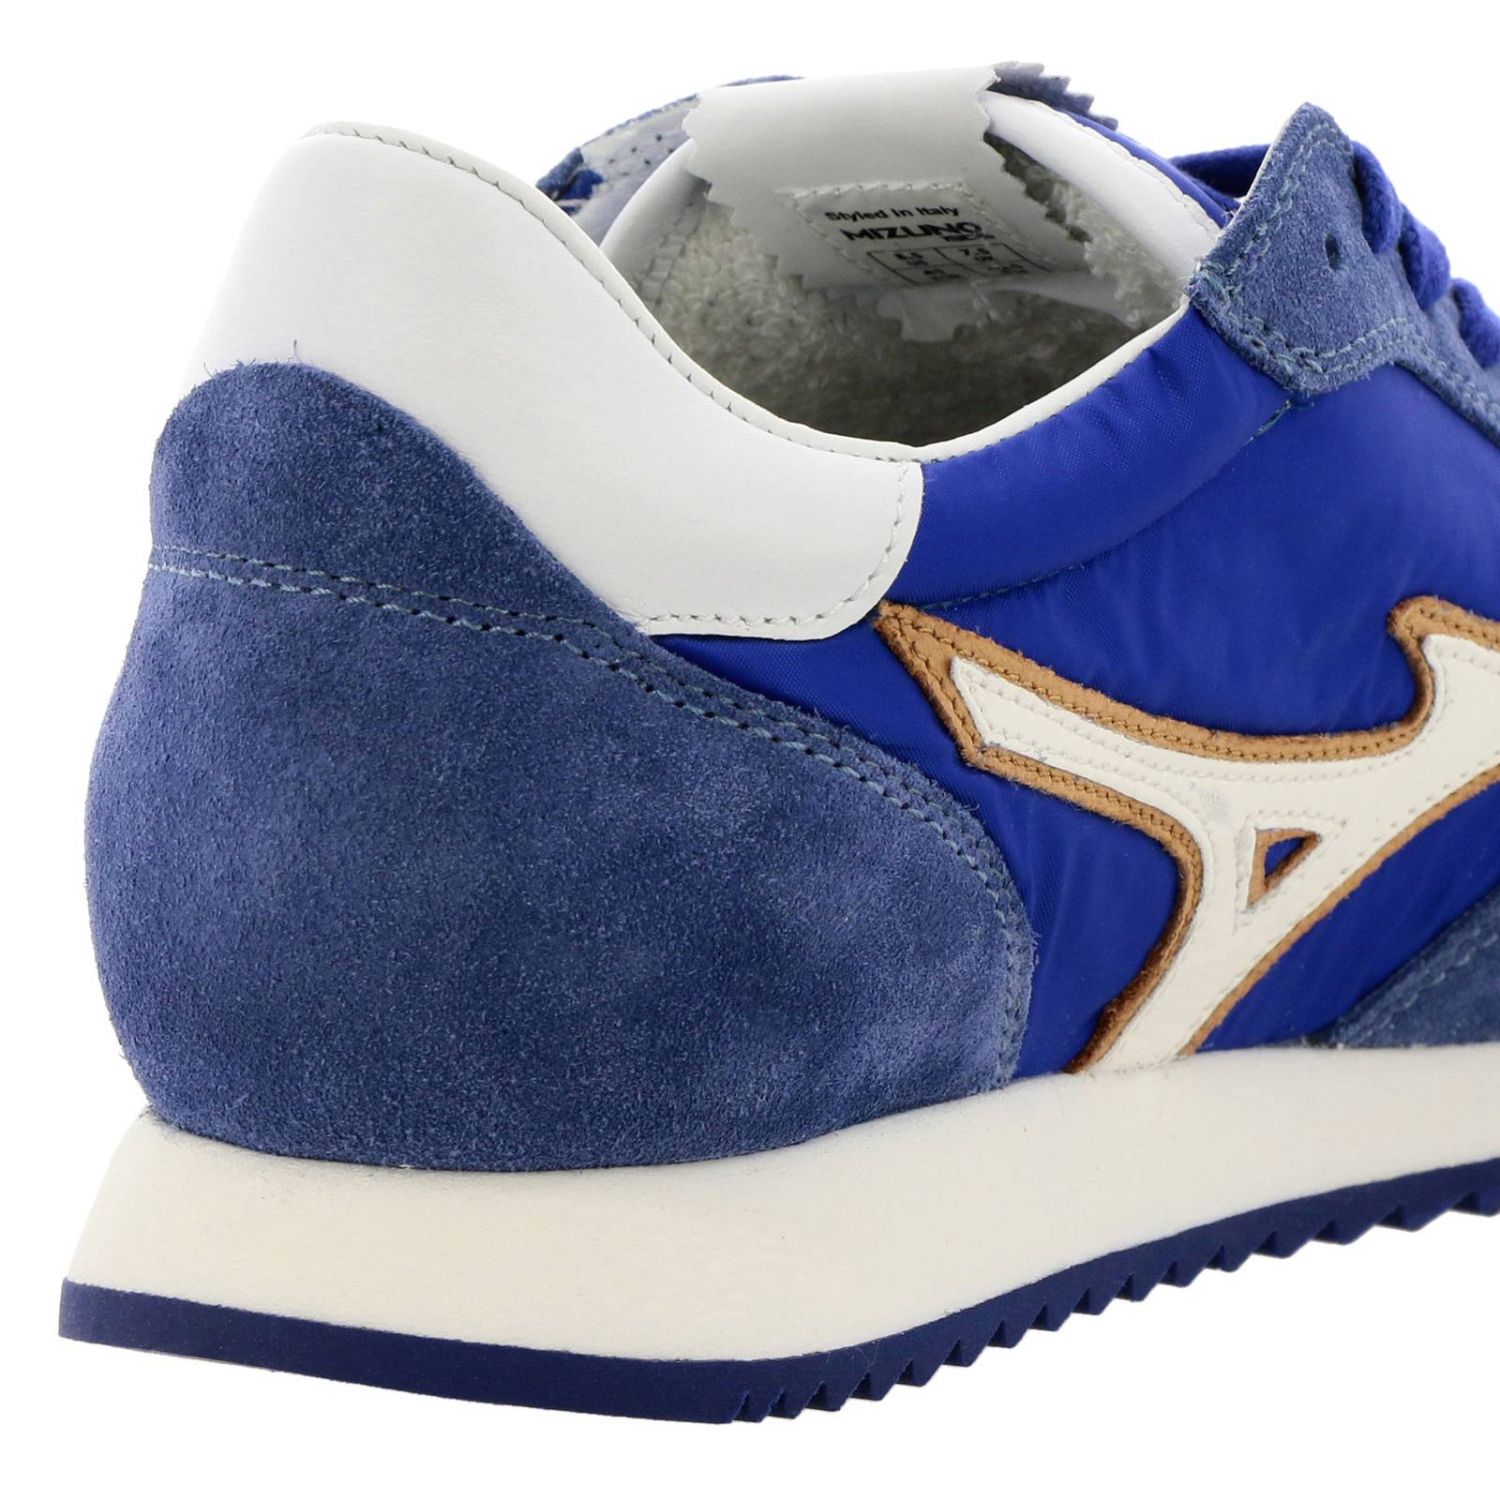 Mizuno Outlet: Shoes men | Sneakers Mizuno Men Blue | Sneakers Mizuno ...